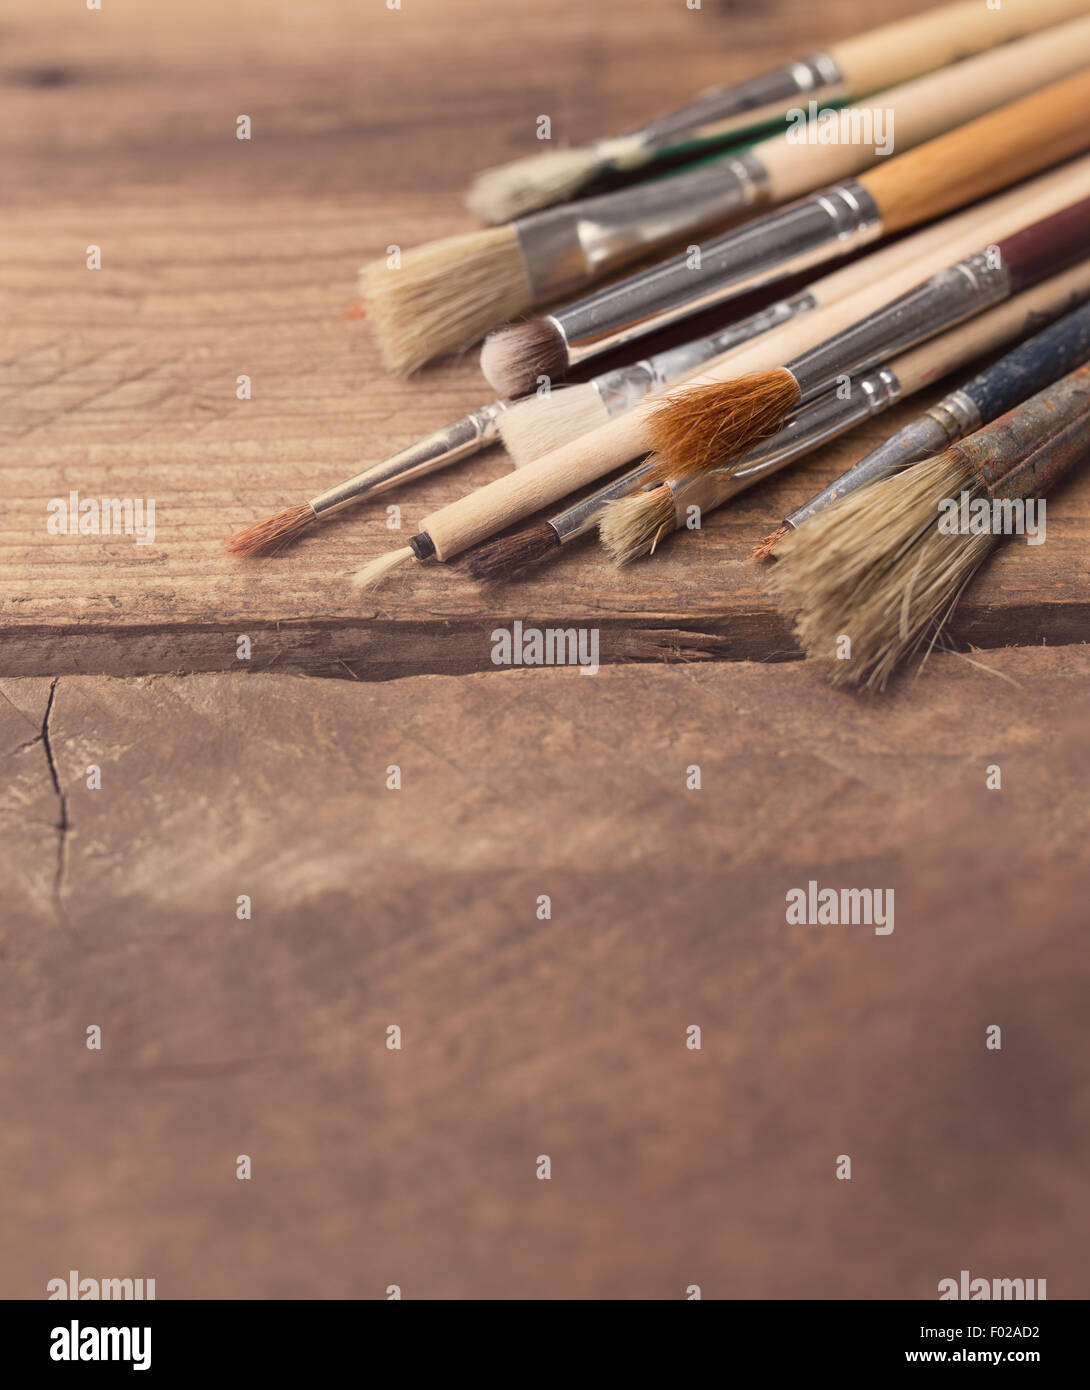 Set of paintbrushes on a wood background Stock Photo